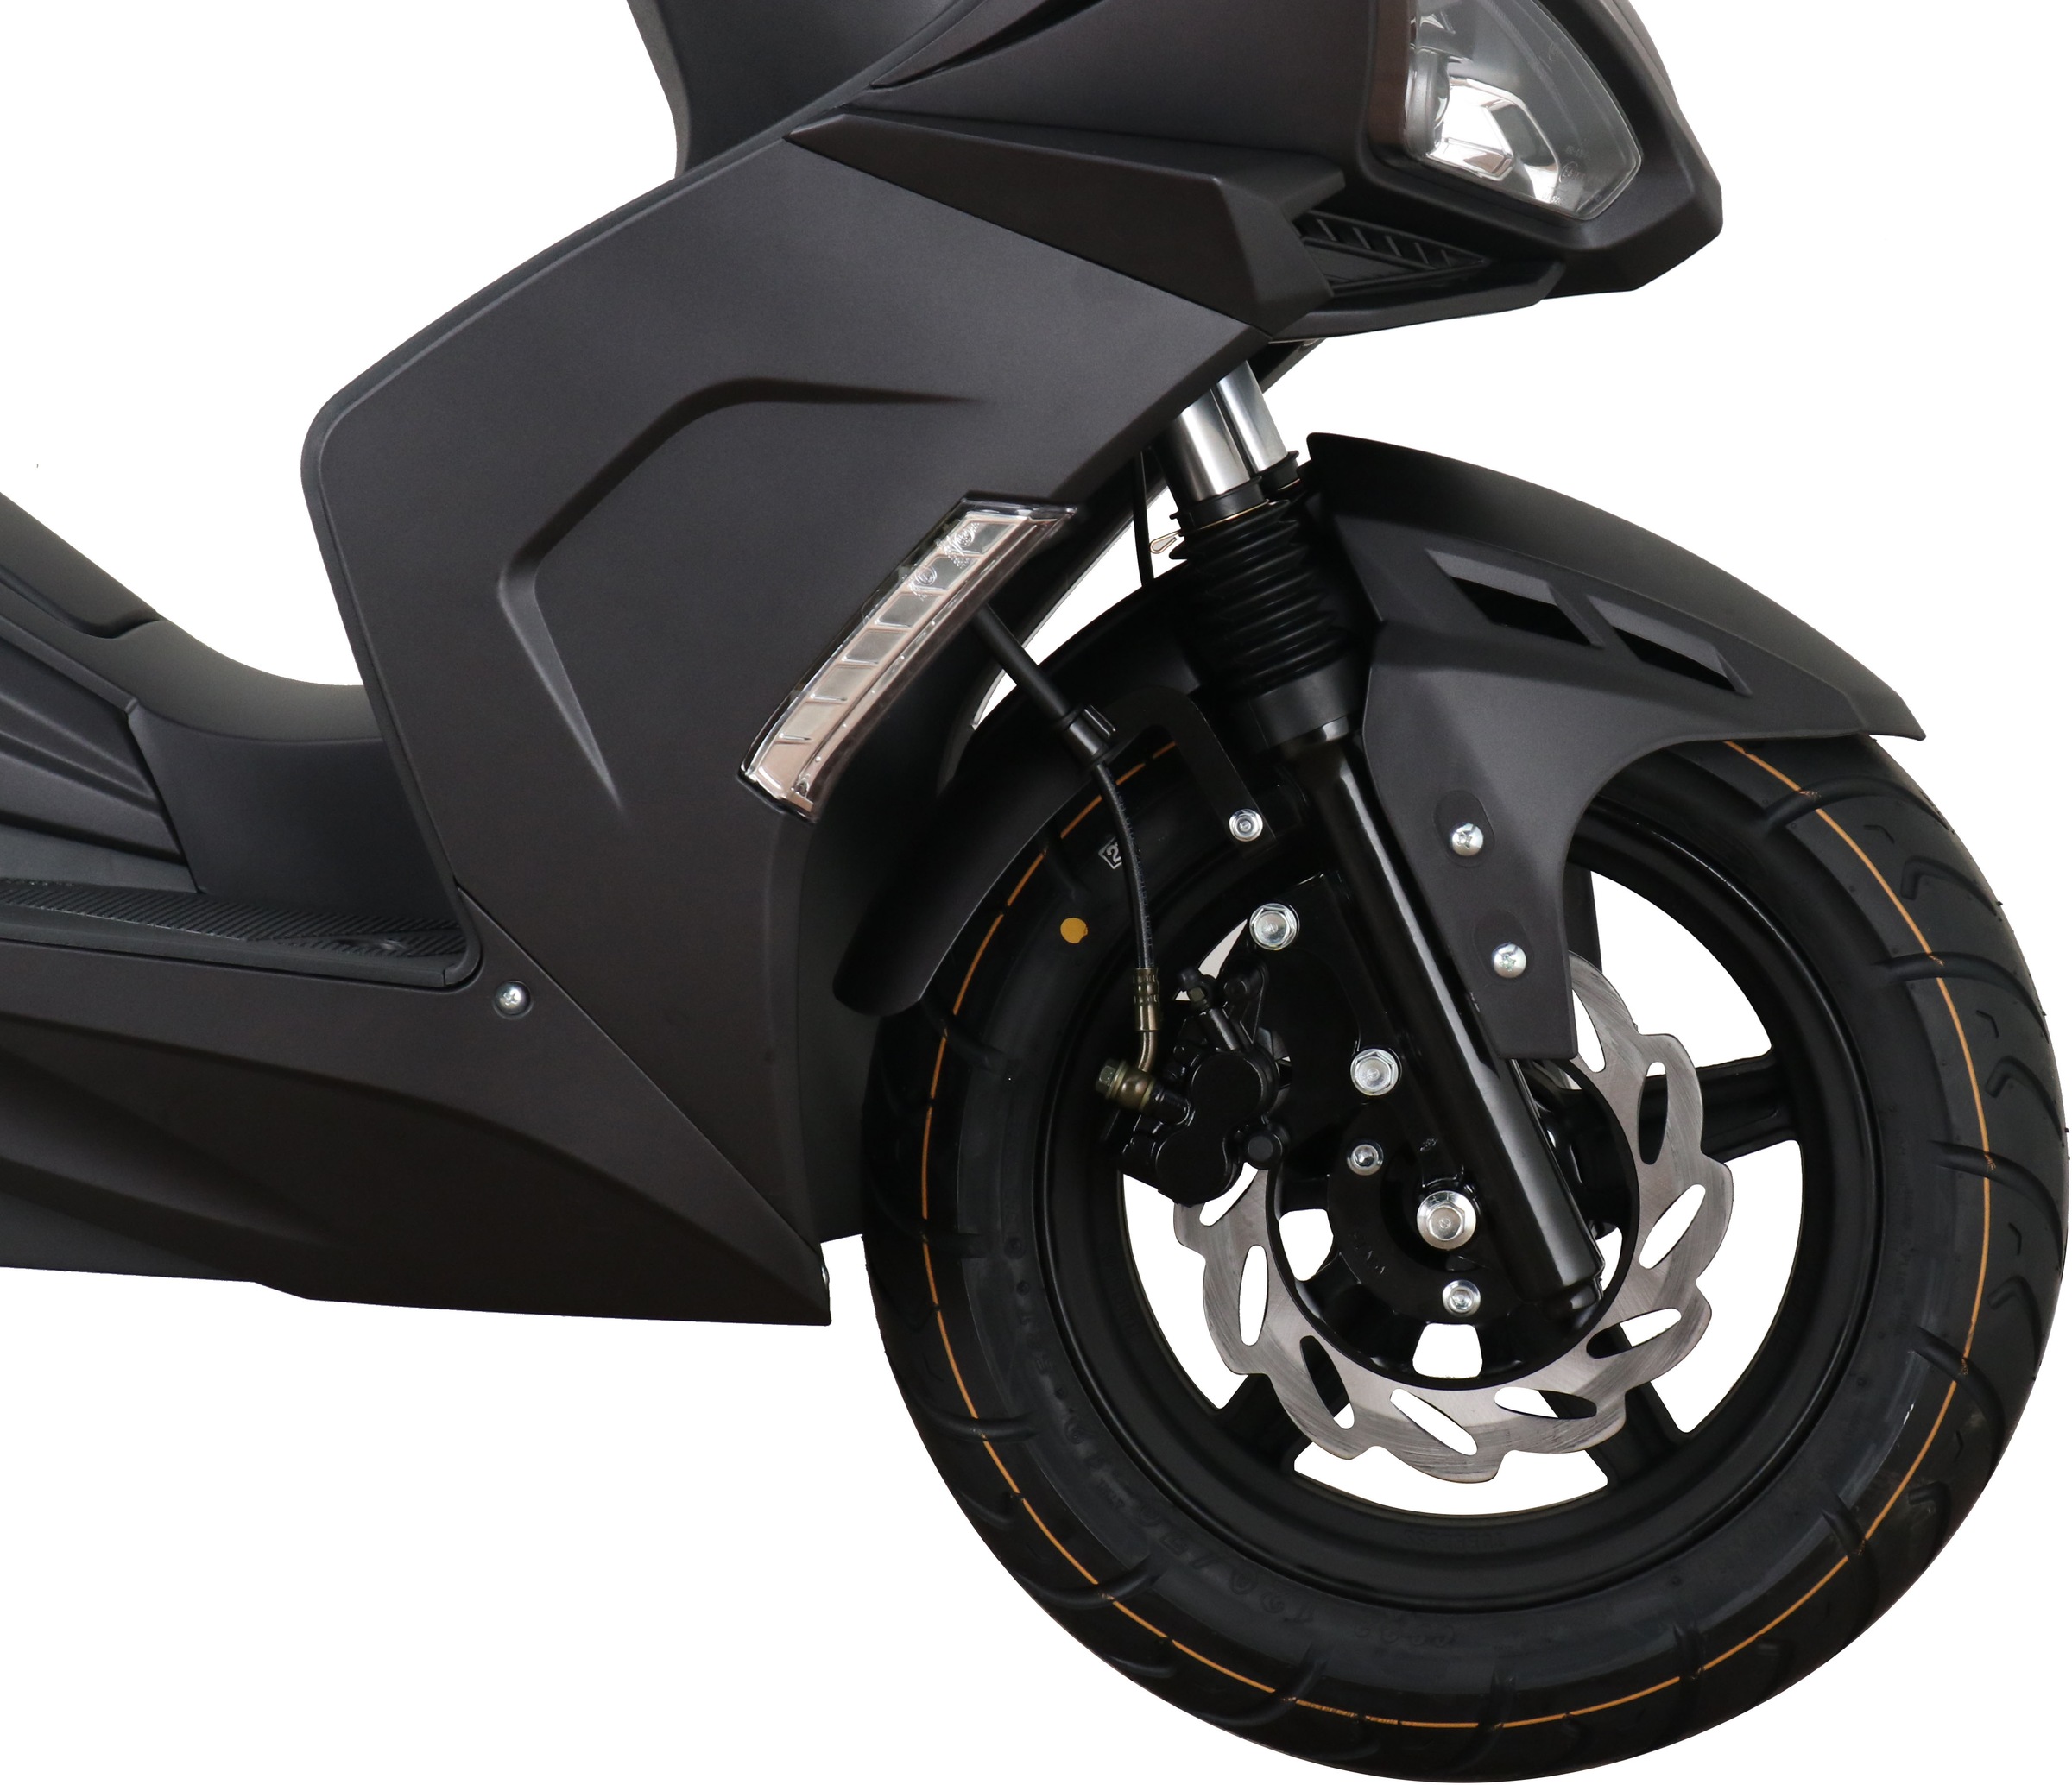 GT UNION Motorroller »Striker«, 50 cm³, 45 km/h, Euro 5, 3 PS